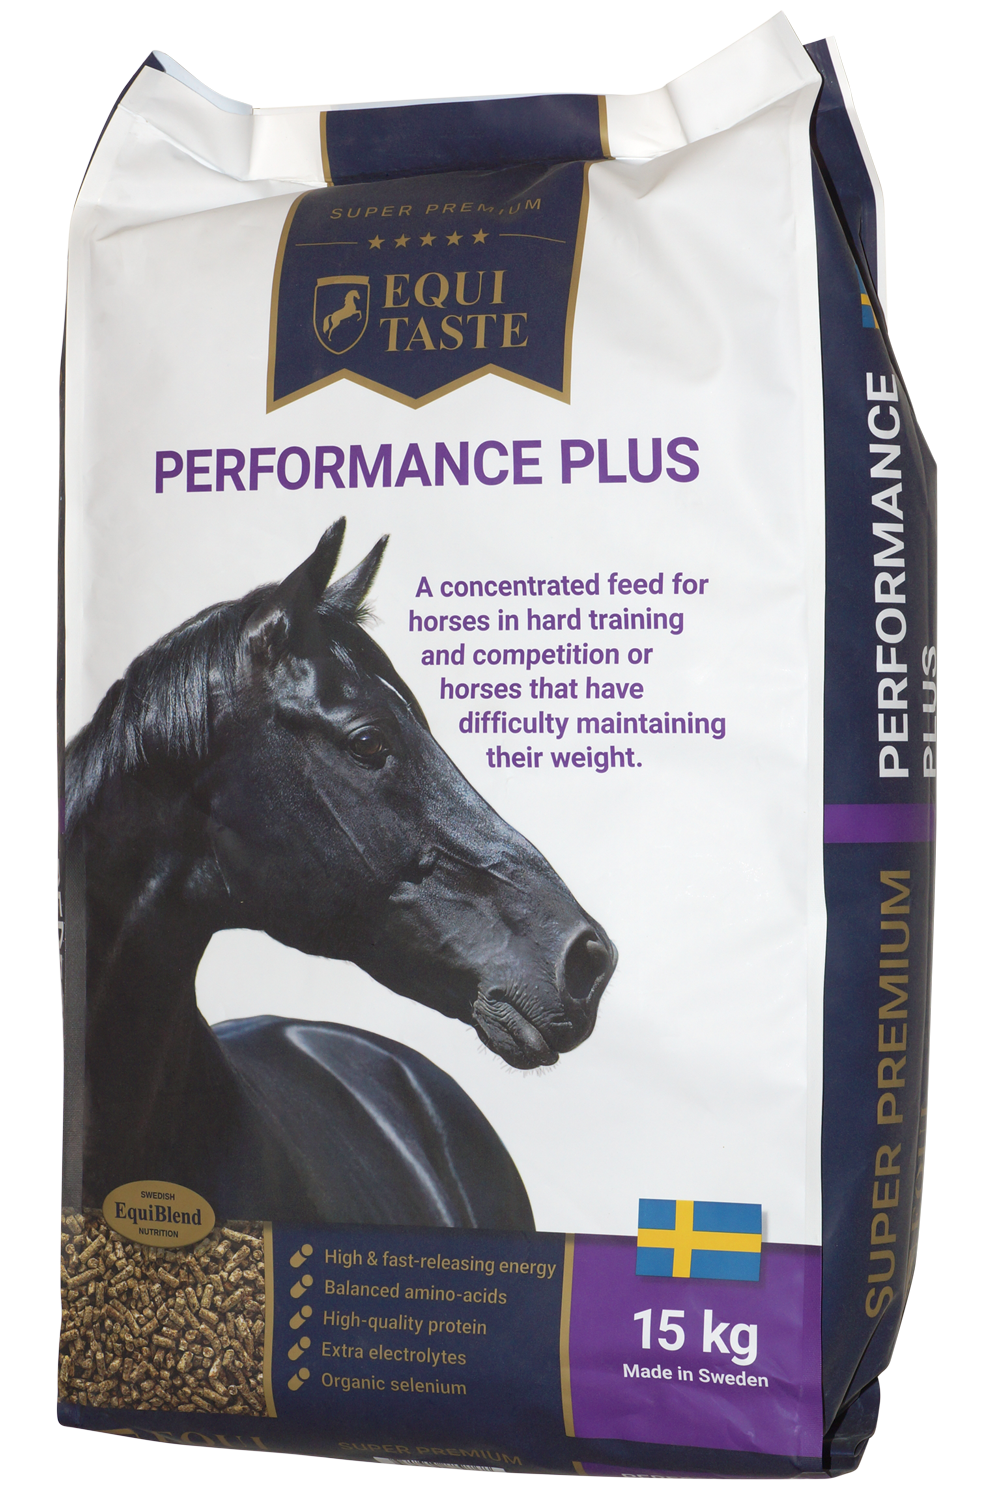 Performance Plus – hestefoder, kraftfoder og tilskud til heste